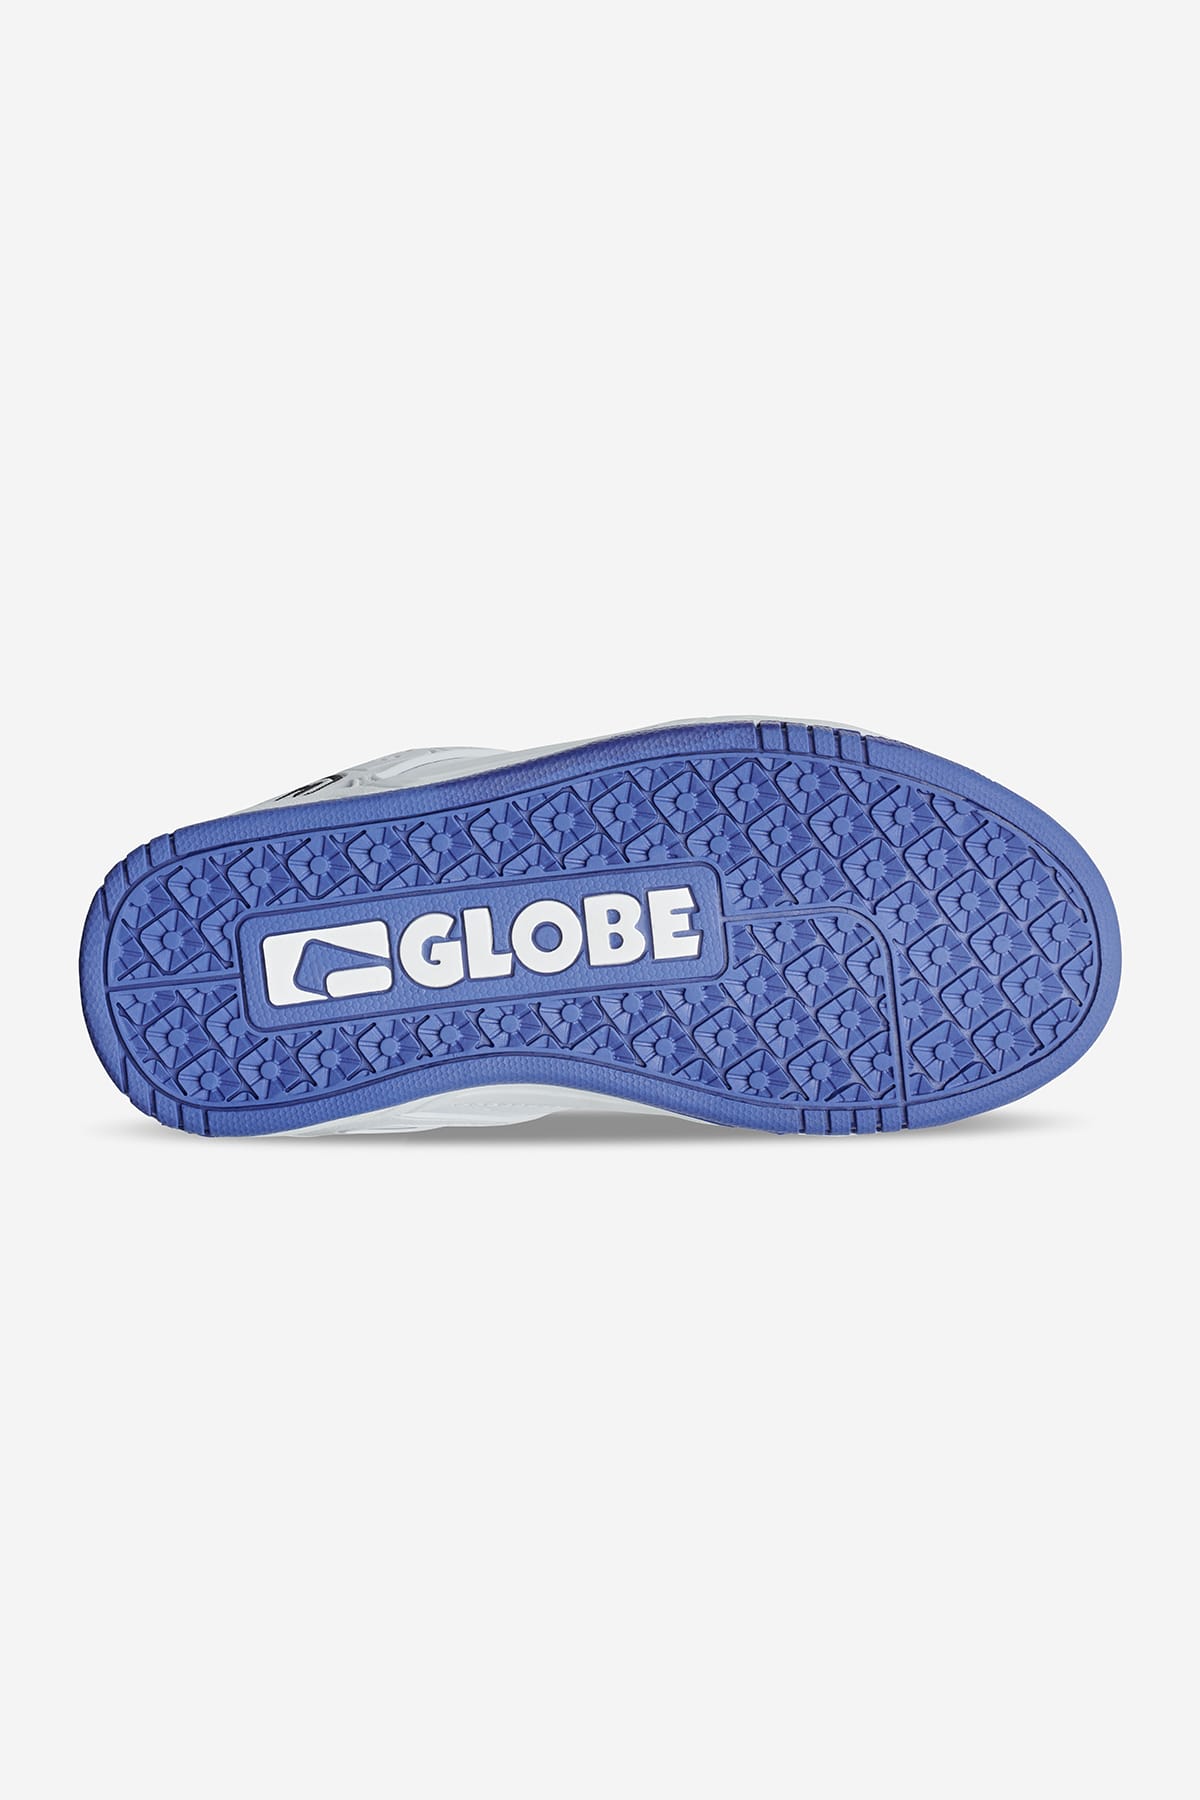 Globe - Tilt Kids - White/Cobalt - Skate Shoes